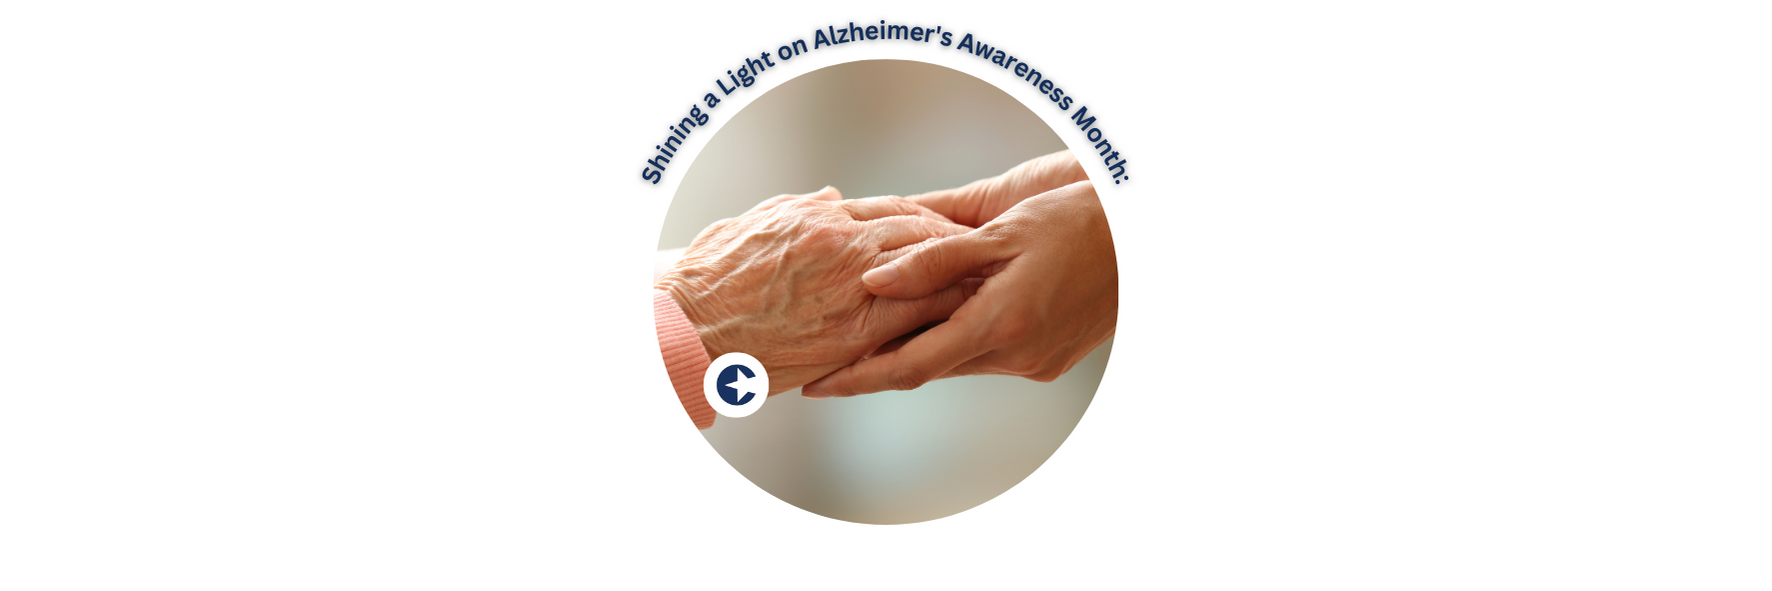 Shining a Light on Alzheimer's Awareness Month: